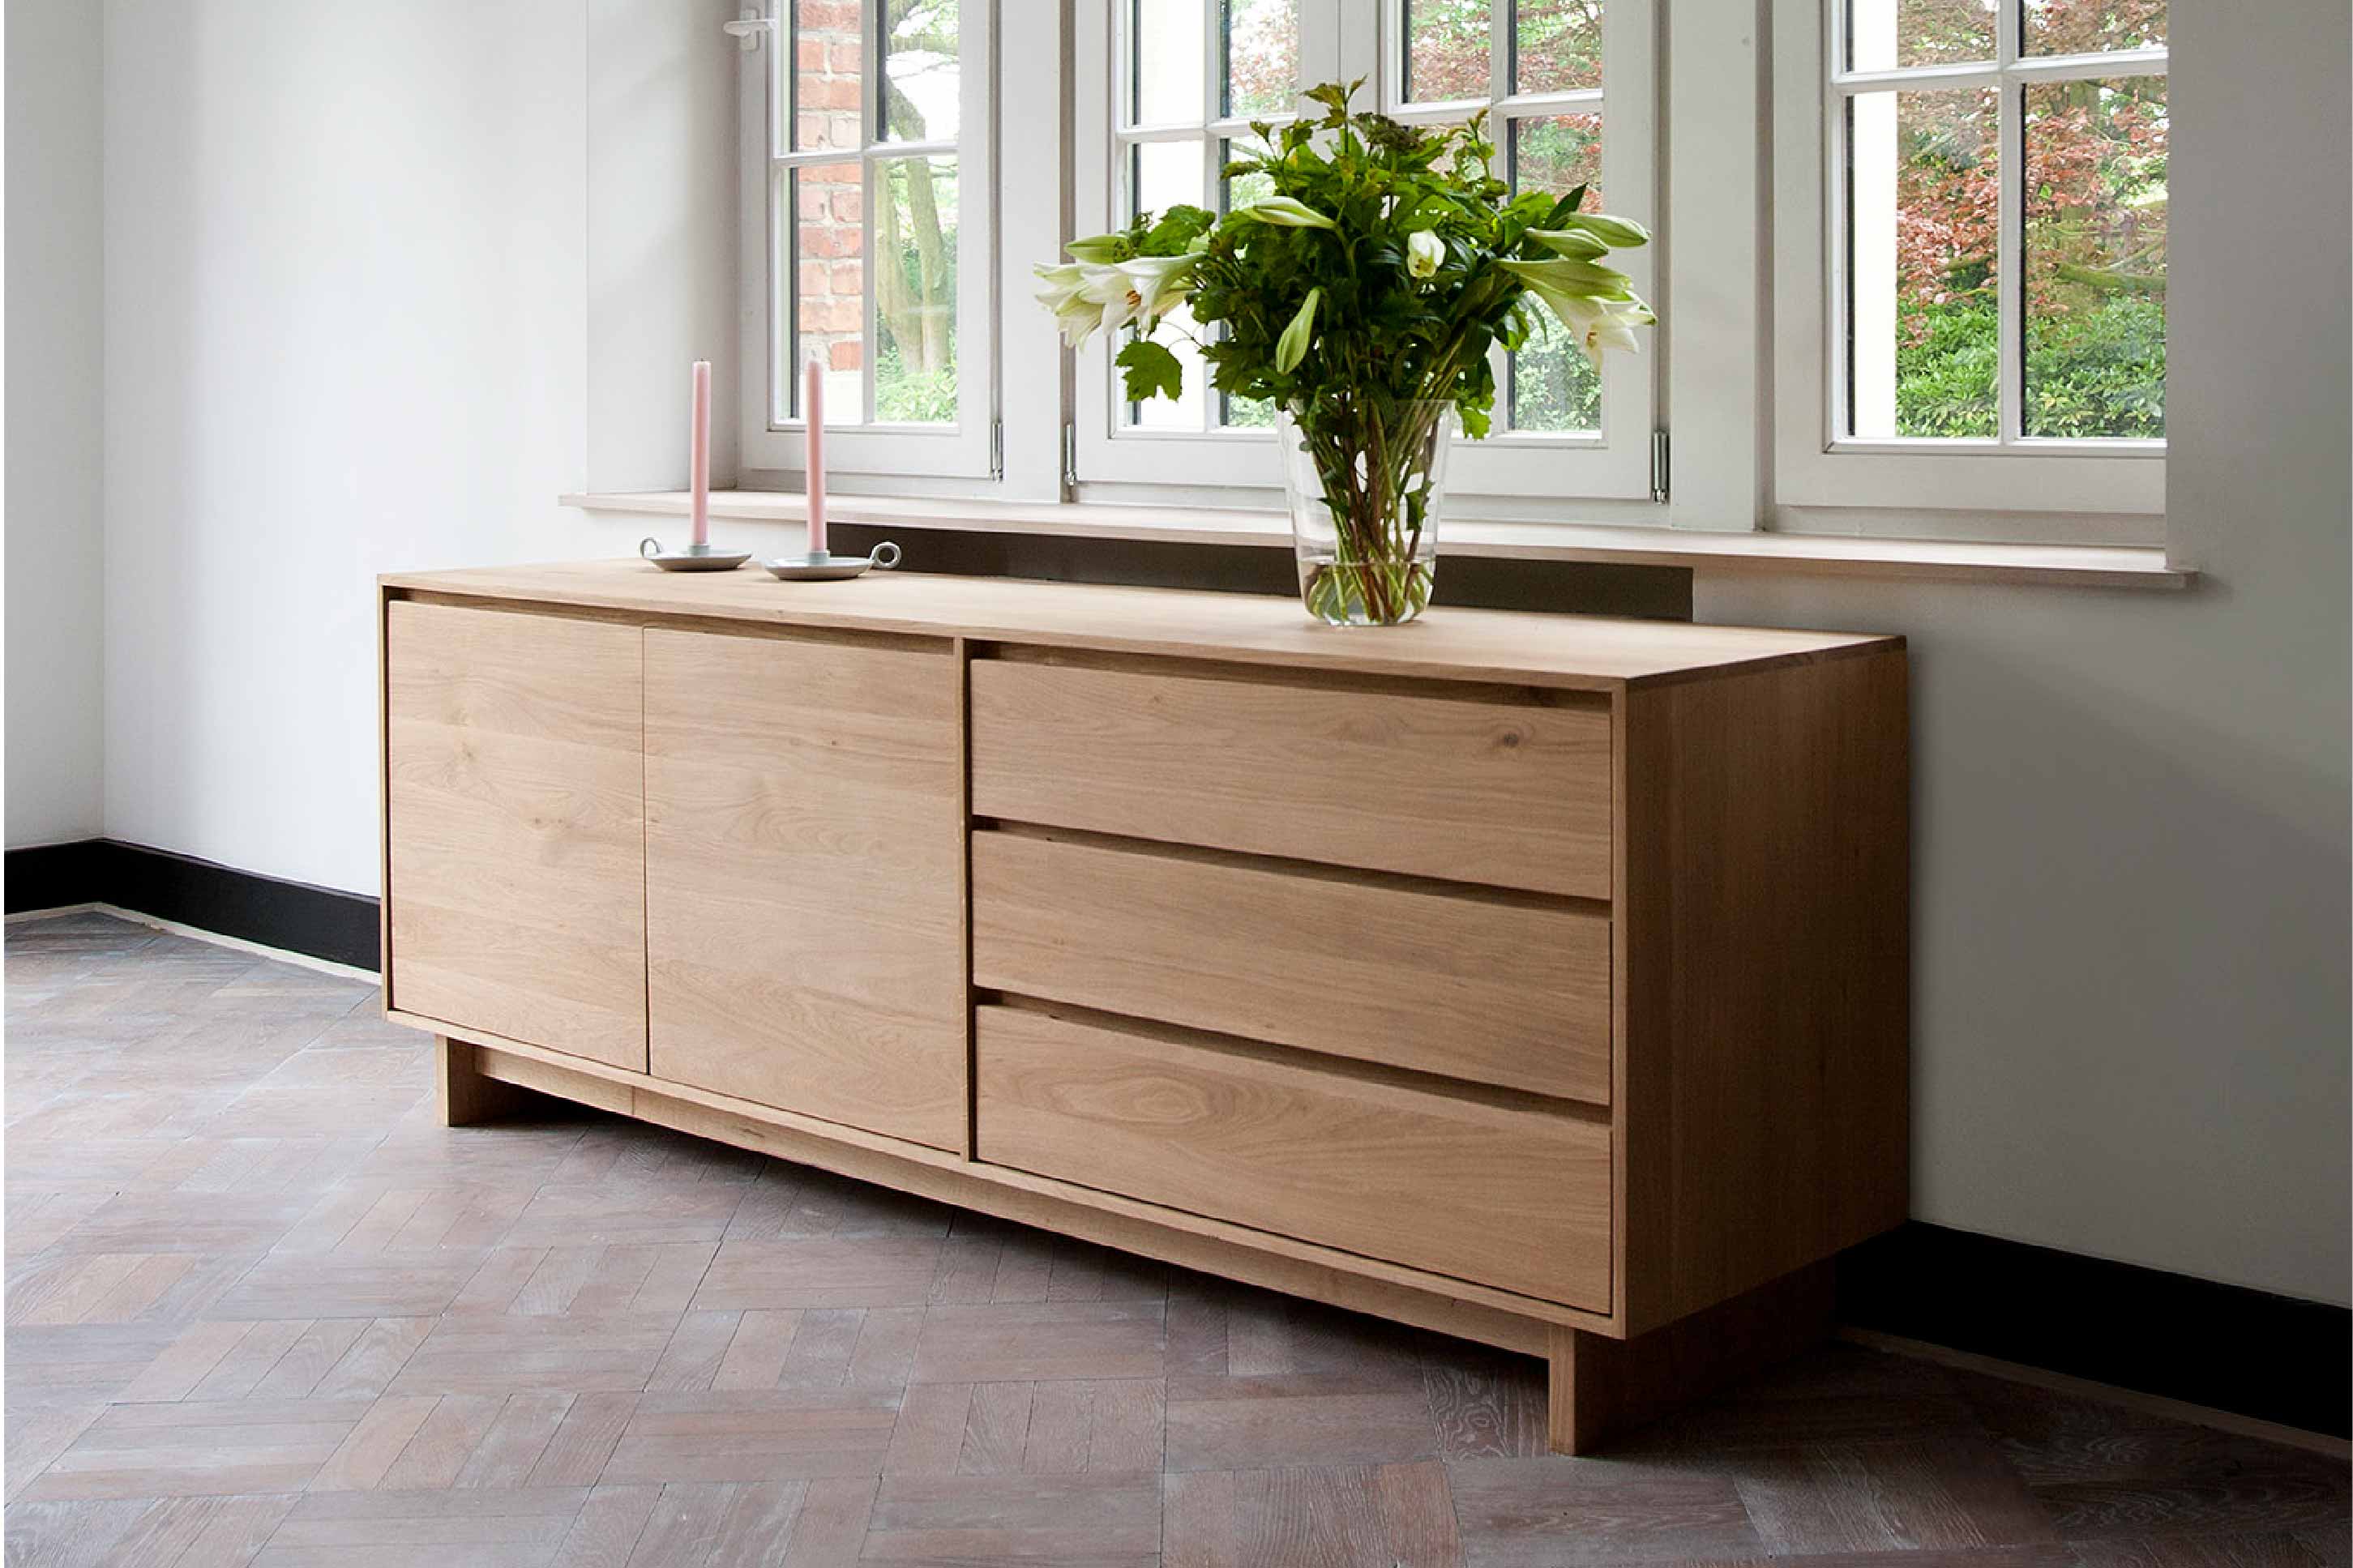 比利時原裝進口實木傢俬 - 收納系列 - Wave系列橡木兩門餐具櫃